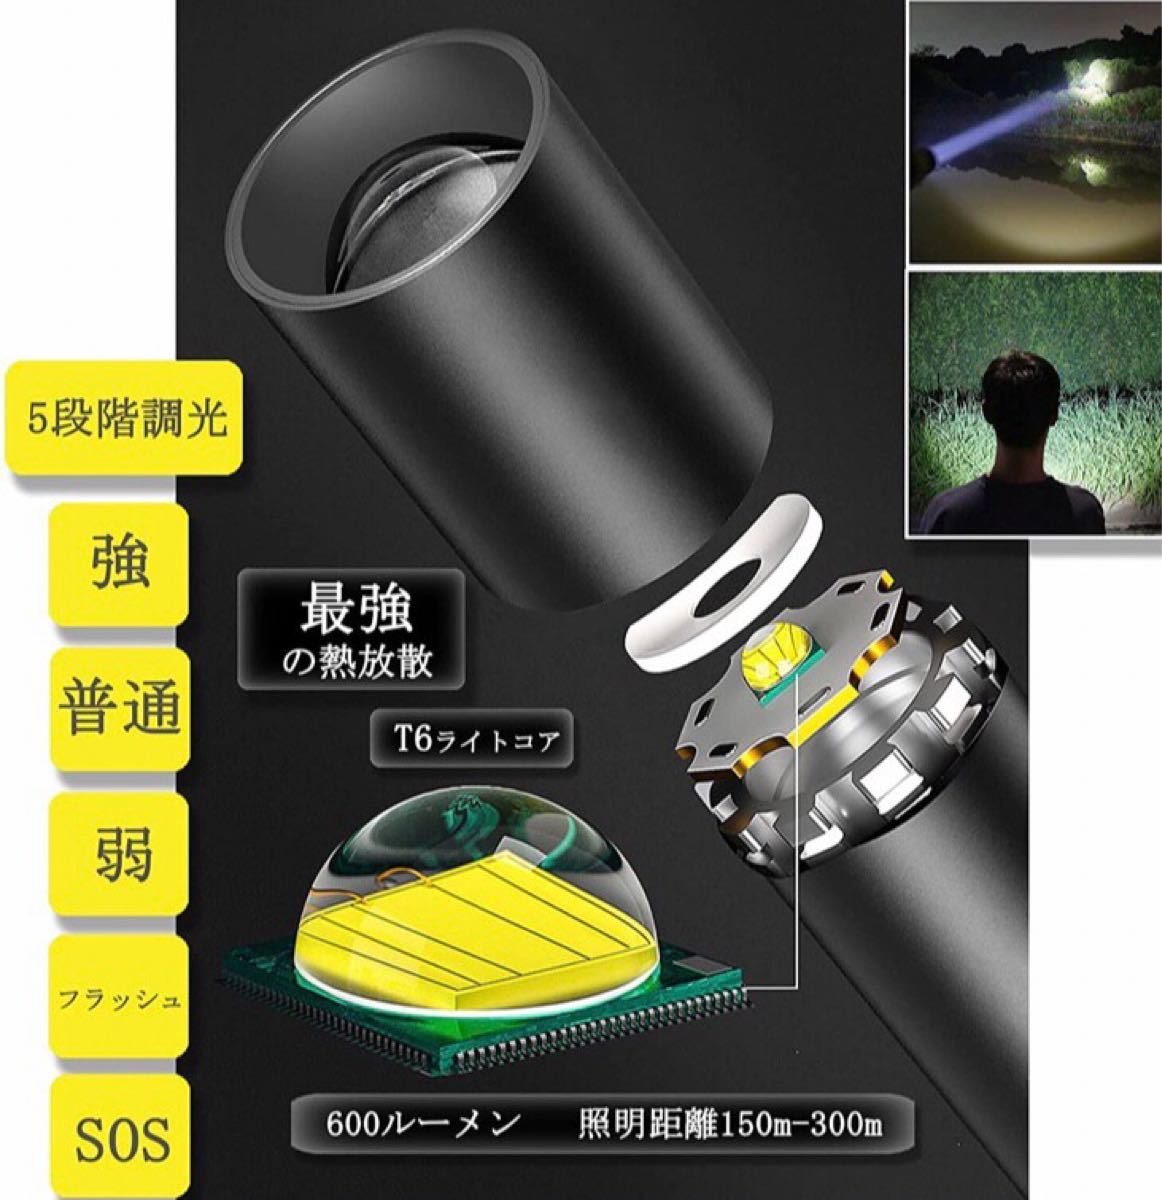 LED懐中電灯 超長点灯時間/2600mAh USB 充電式 超高輝度